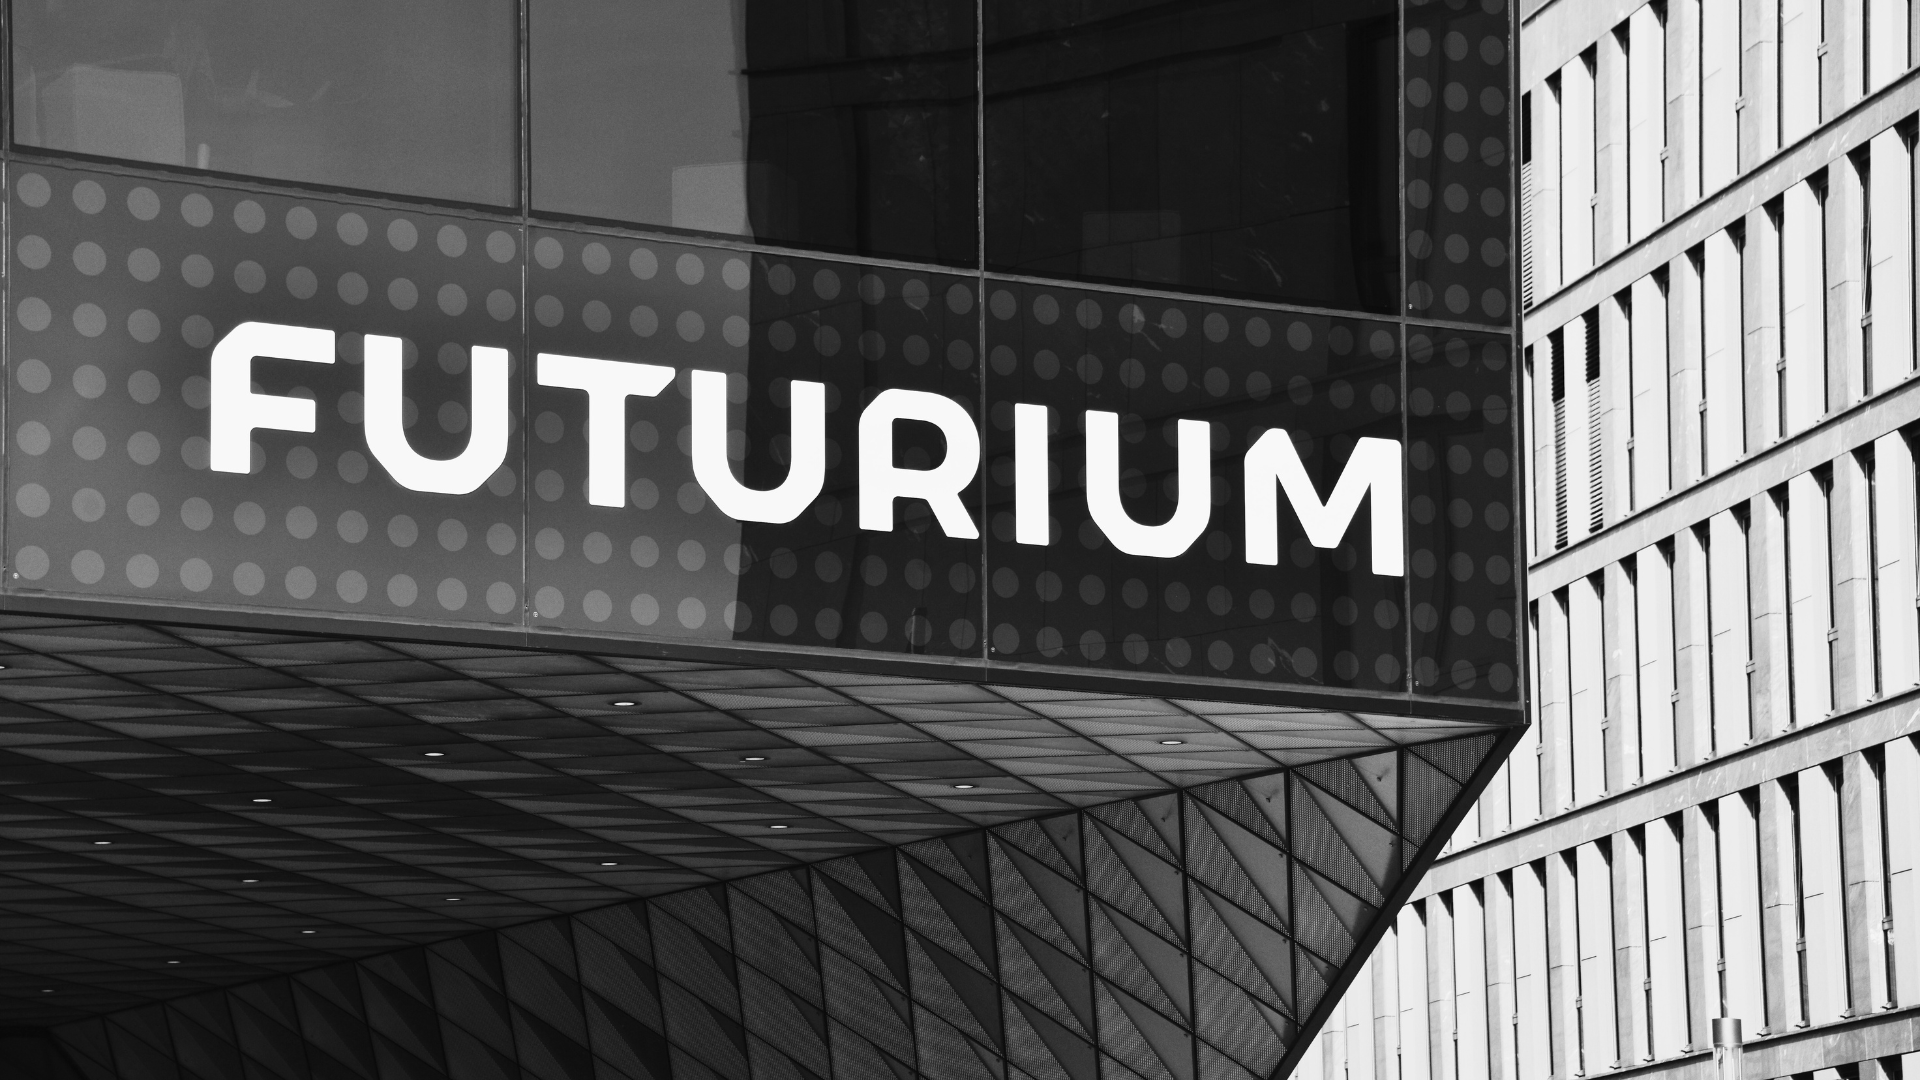 Detailaufnahme vom FUTURIUM in Berlin mit dem Schriftug "FUTURIUM"